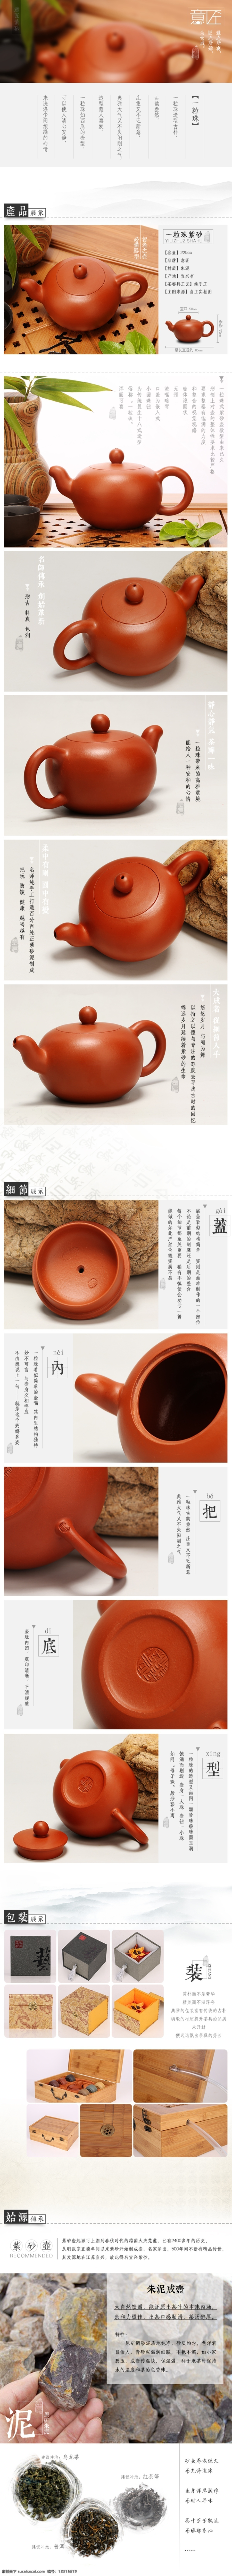 淘宝 产品展示 茶壶 优雅 淘宝素材 店铺 详情 页